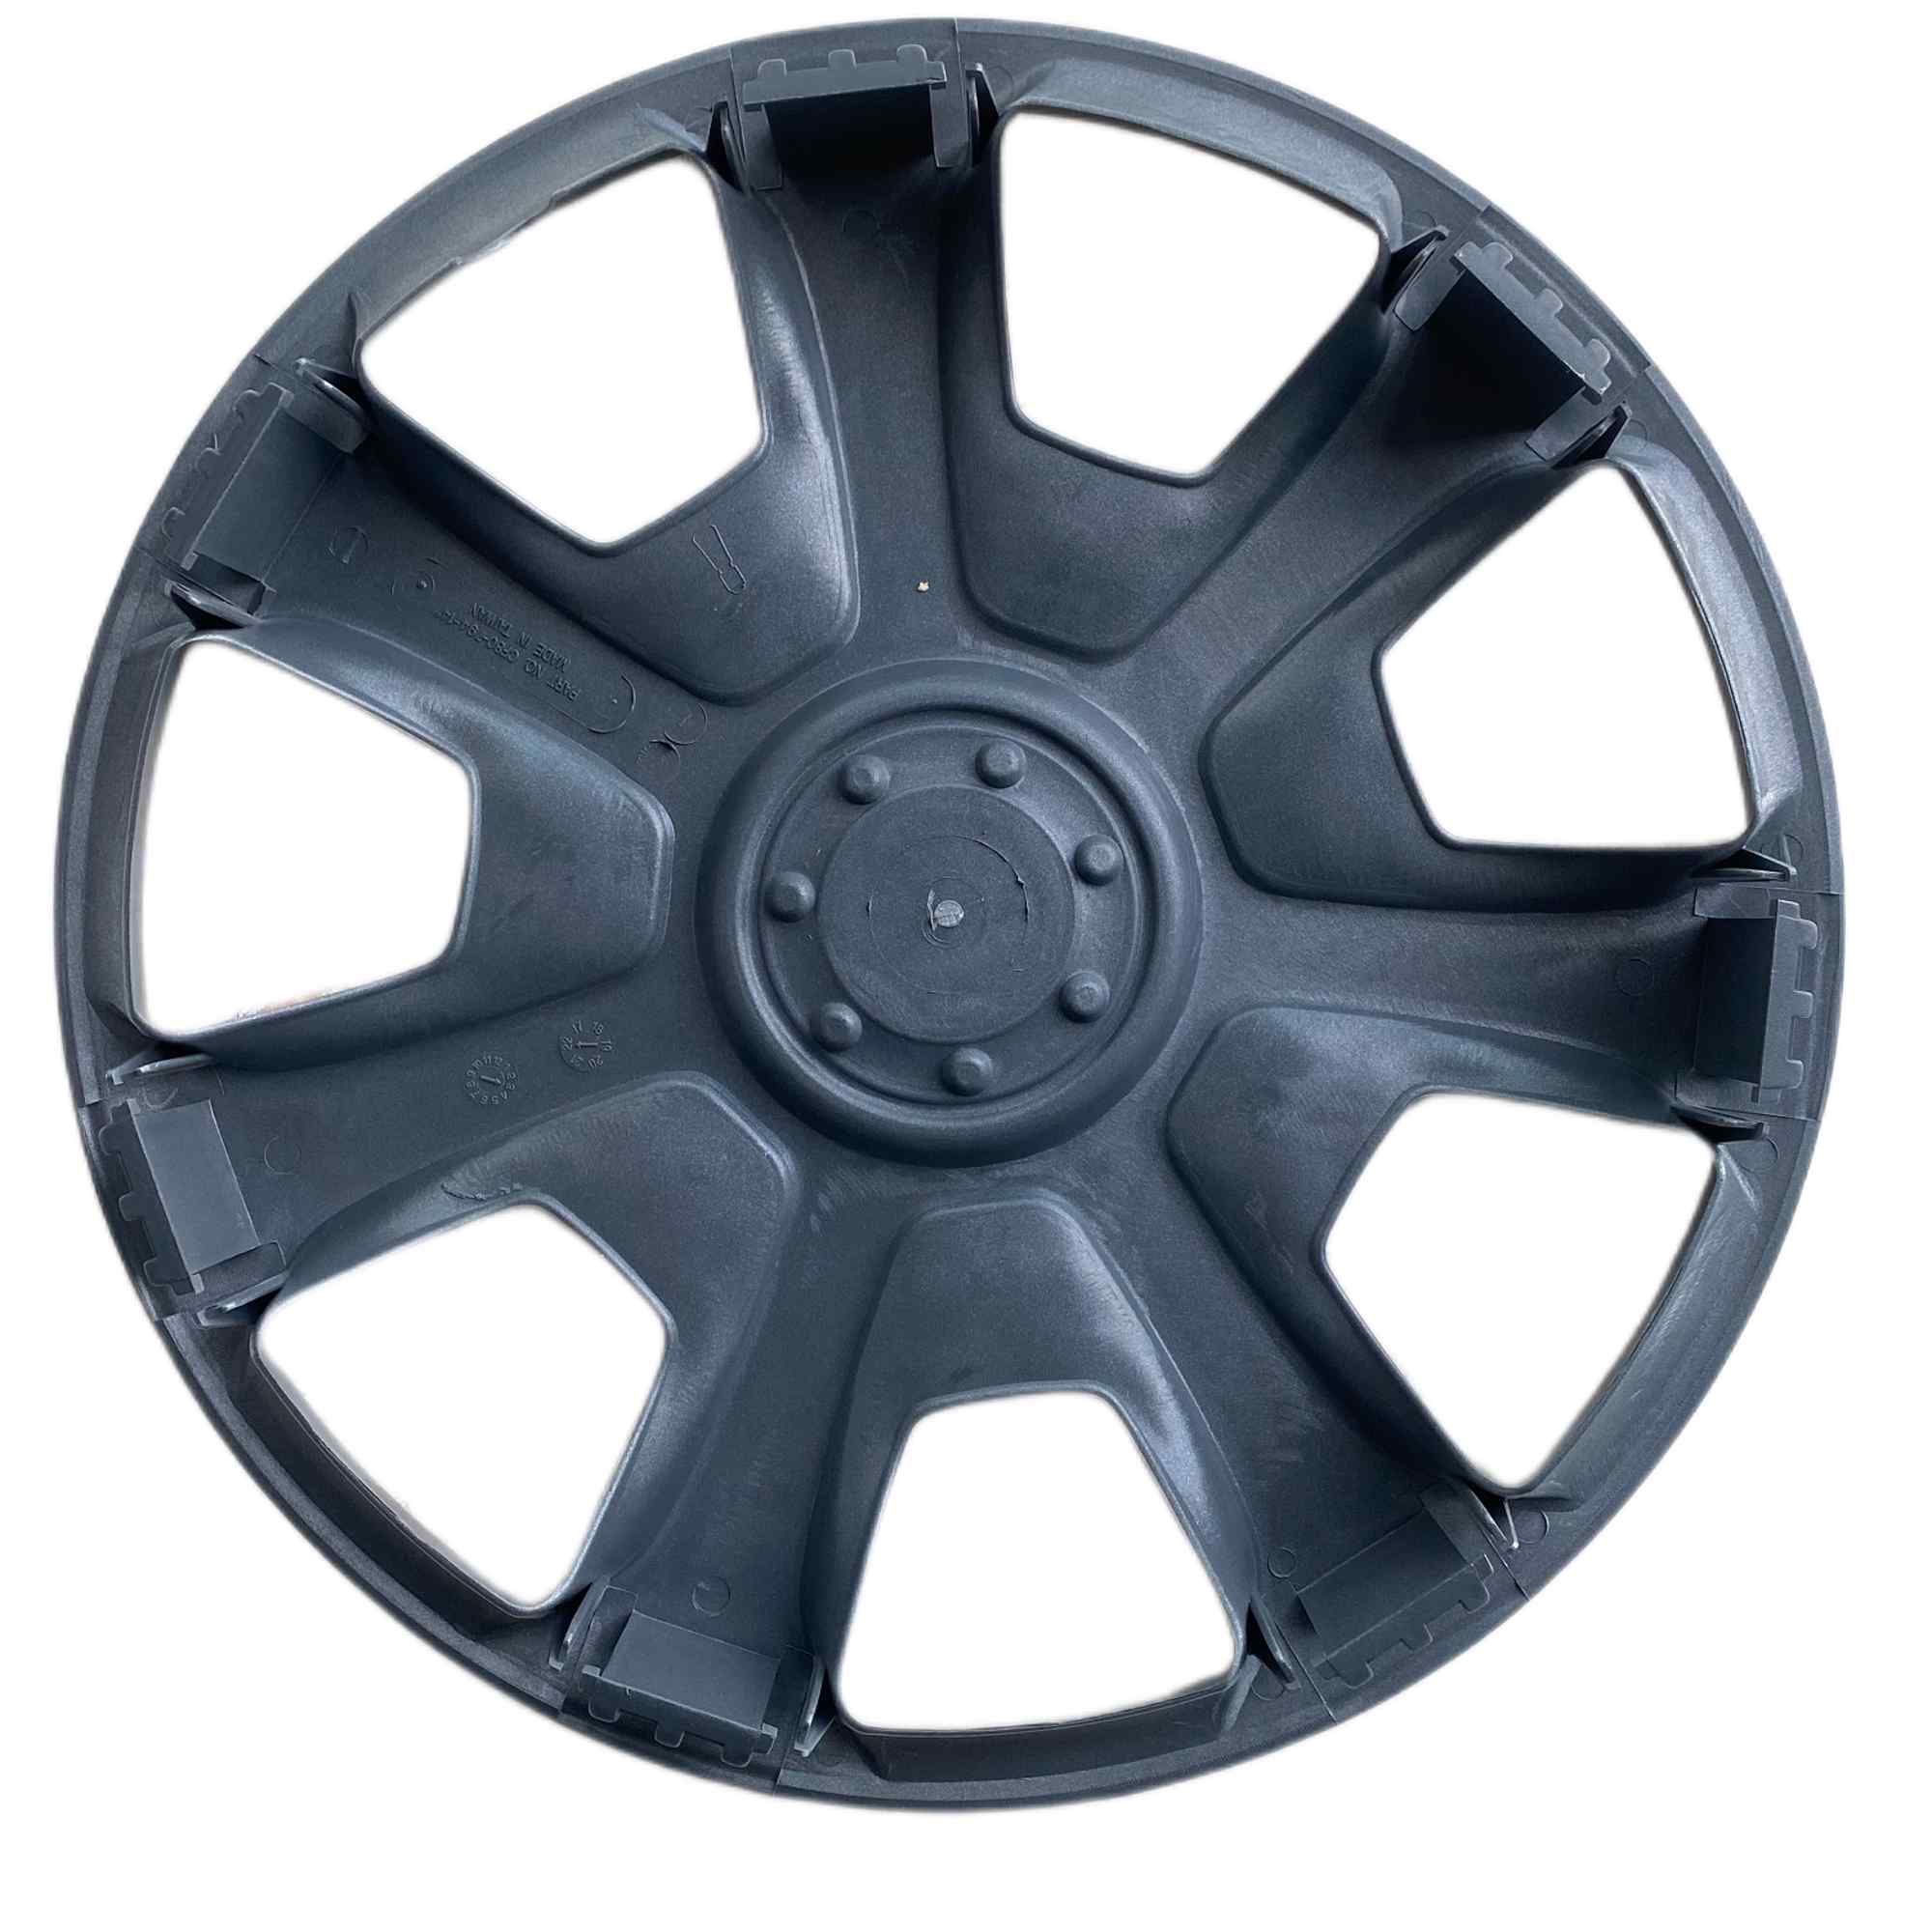  BBJOZ tapacubos compatible con cubiertas de rueda de 13/14/15  pulgadas, piezas de modificación de coche (fin de año gracias por ventas  tapacubos (color : colocación libre, tamaño: 15 pulgadas) : Automotriz